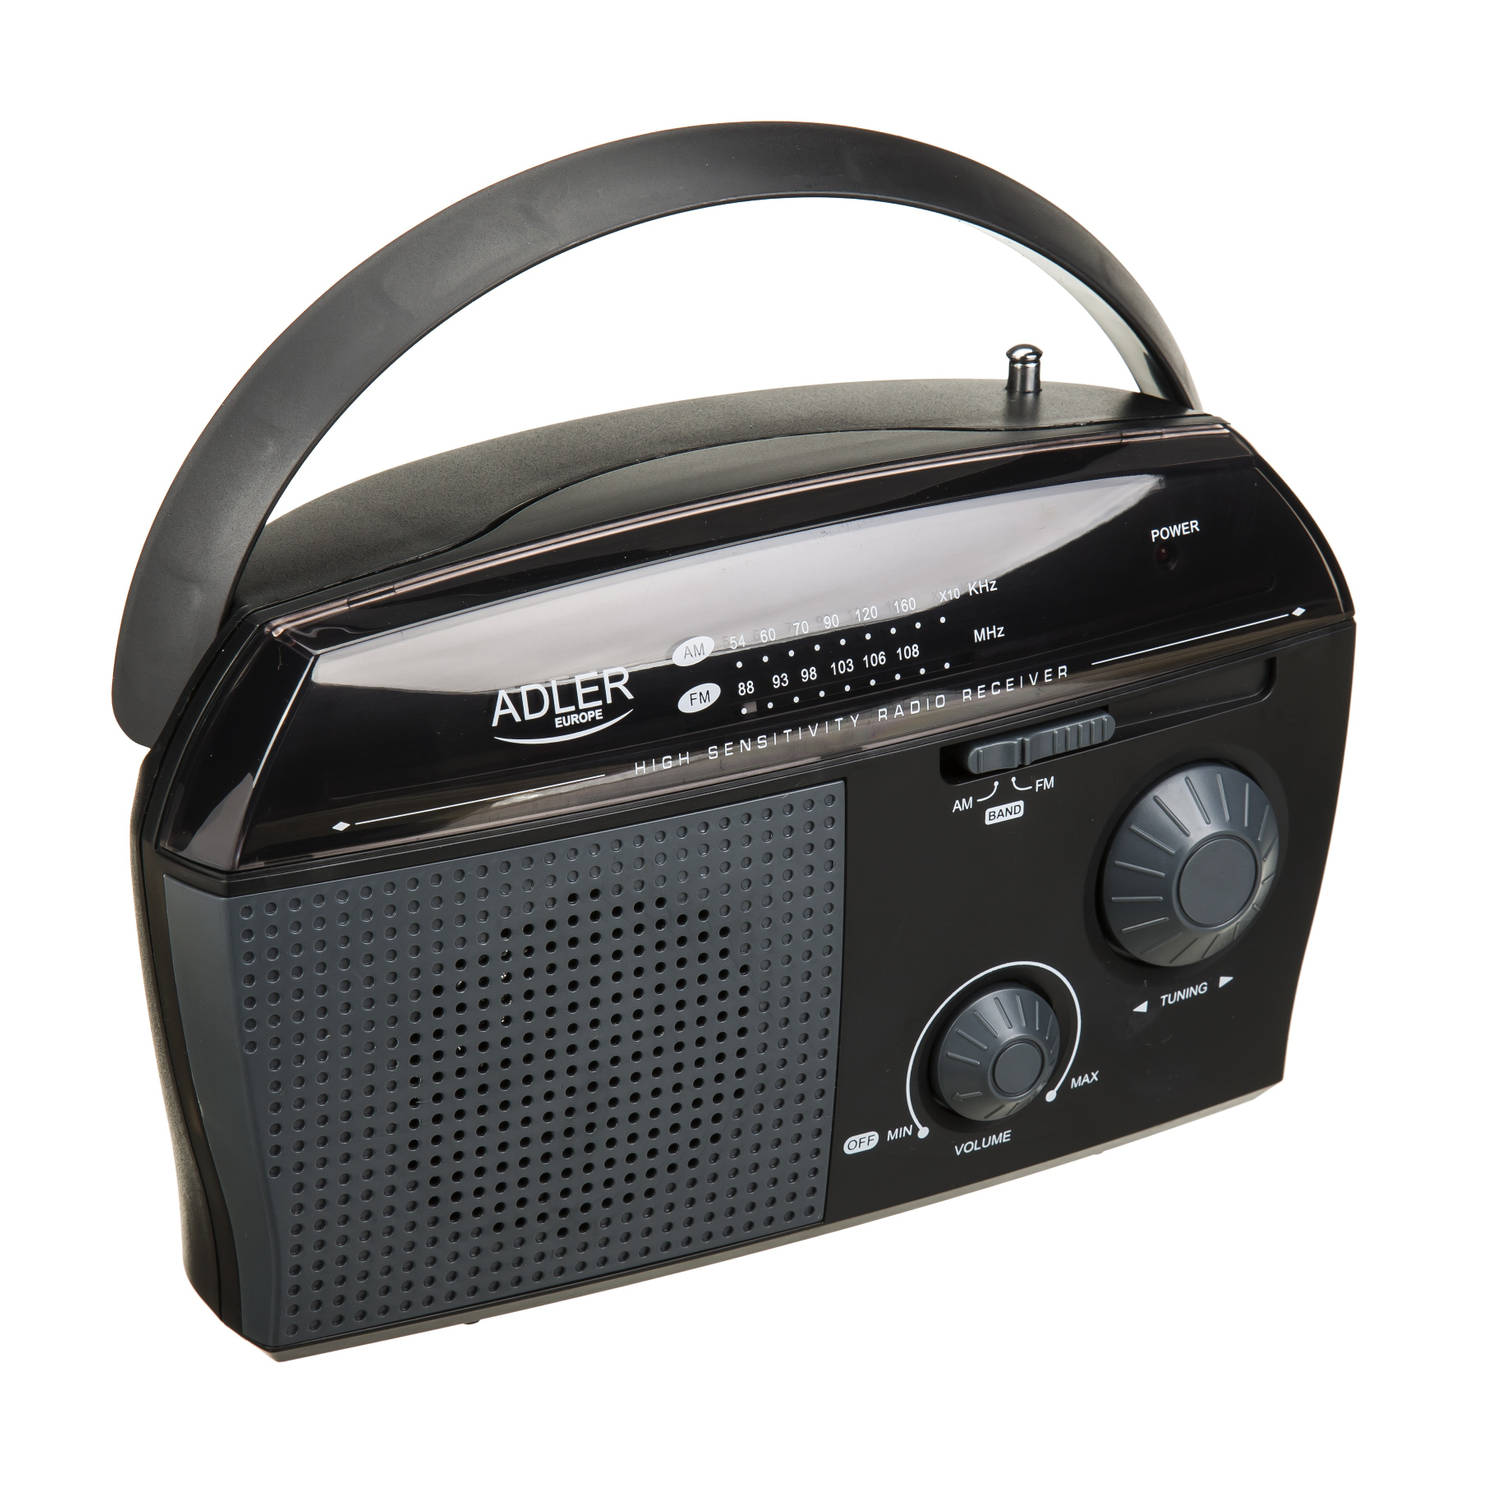 gemakkelijk nieuwigheid pomp Adler AD 1119 kleine portable radio | Blokker